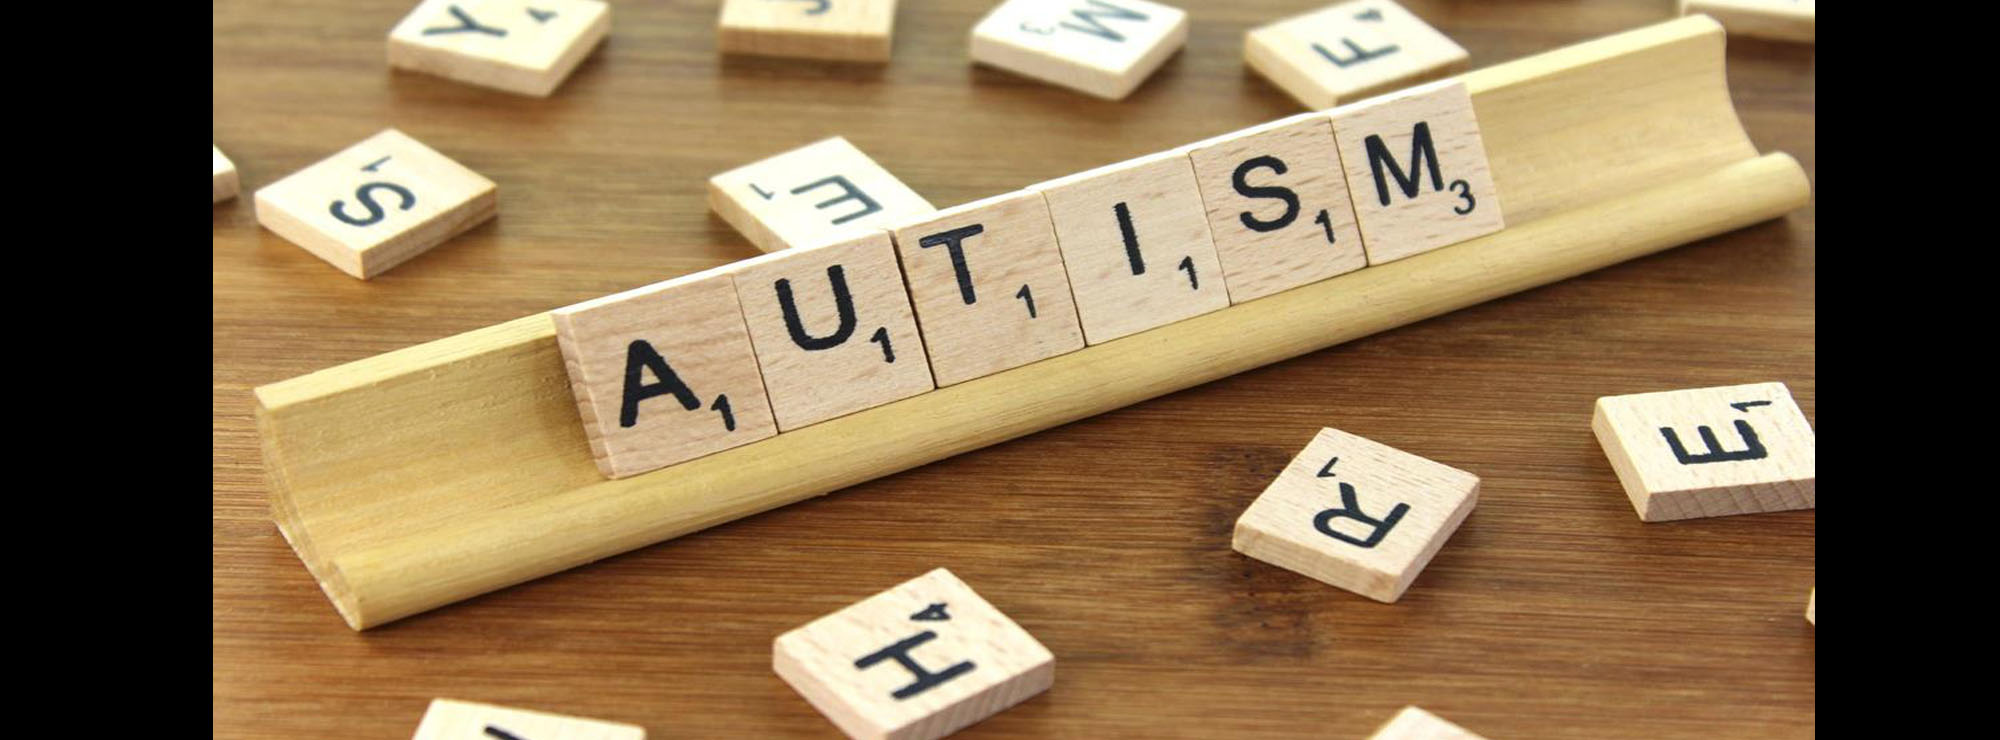 Cos'è l'autismo?